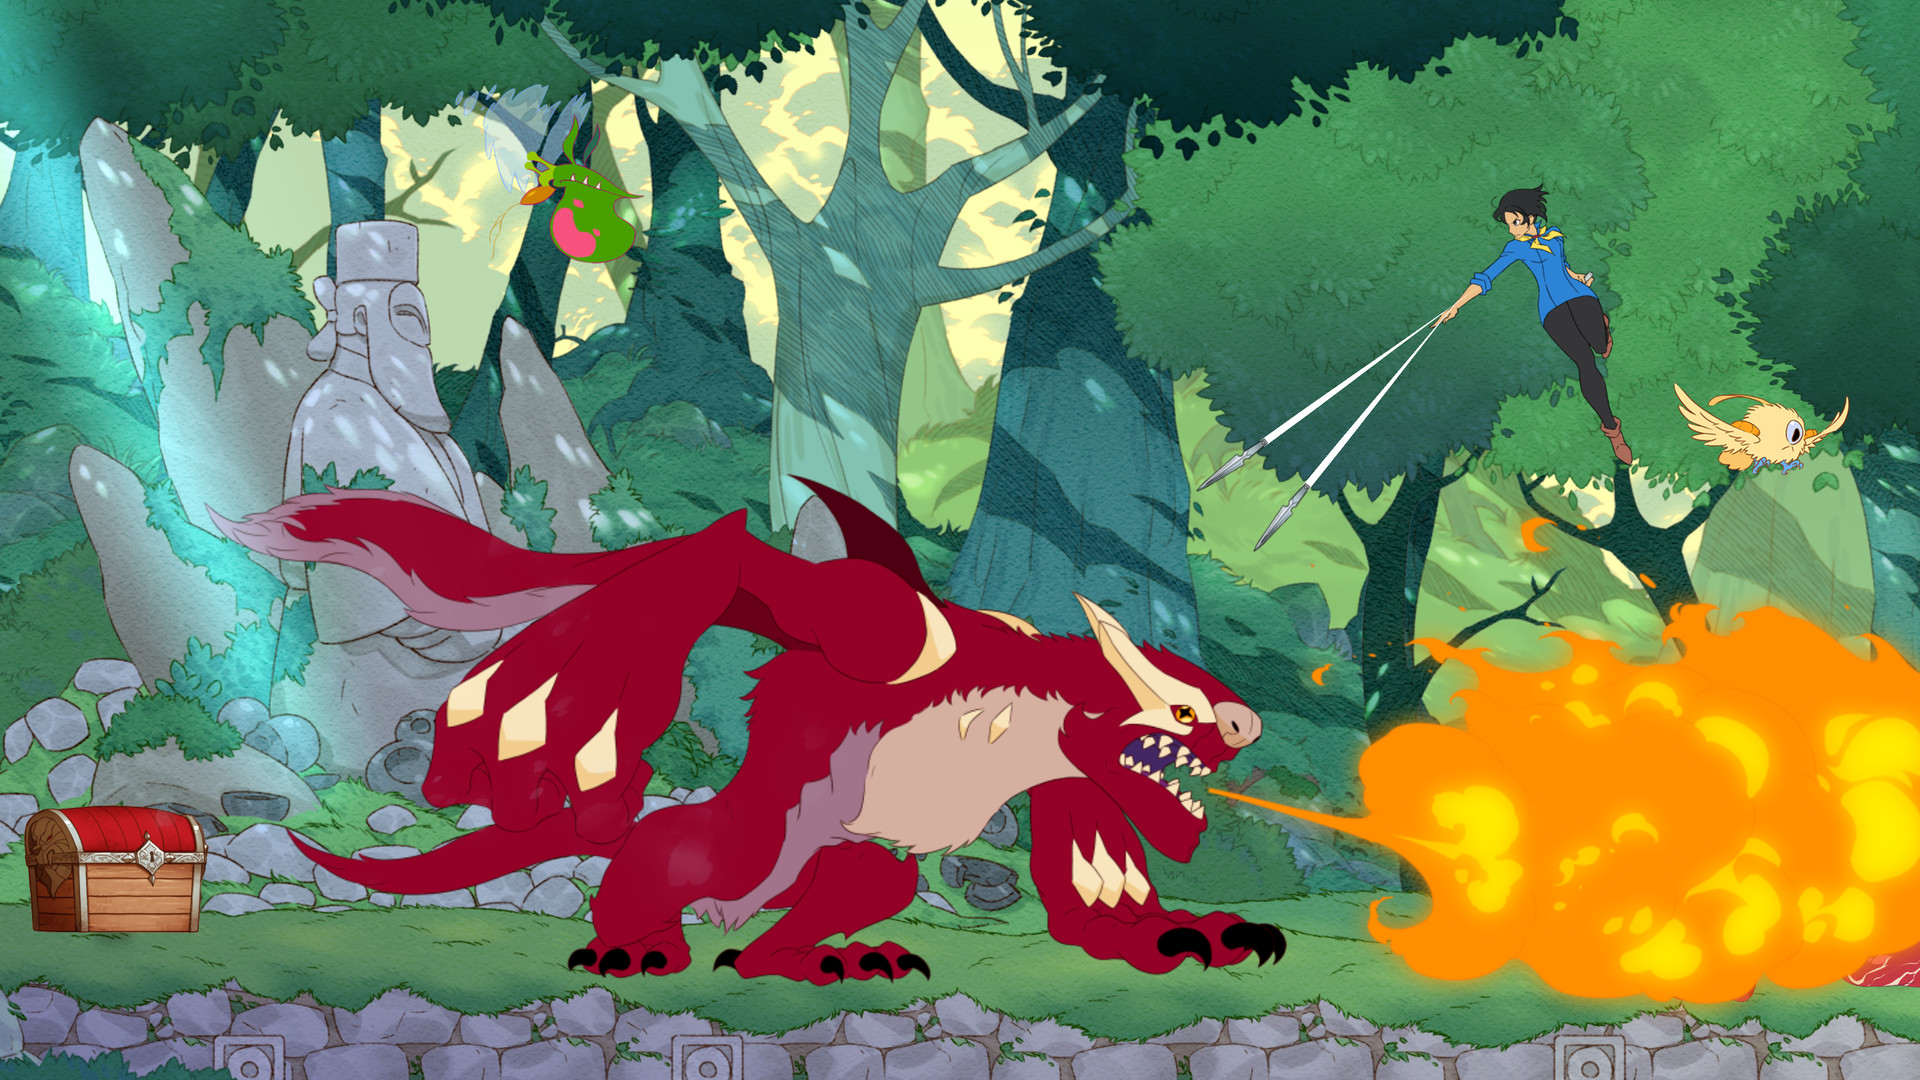 Най -добри аниме игри: Battle Chef Brigade. Изображението показва страховито червено пухкаво същество, дишащо огън